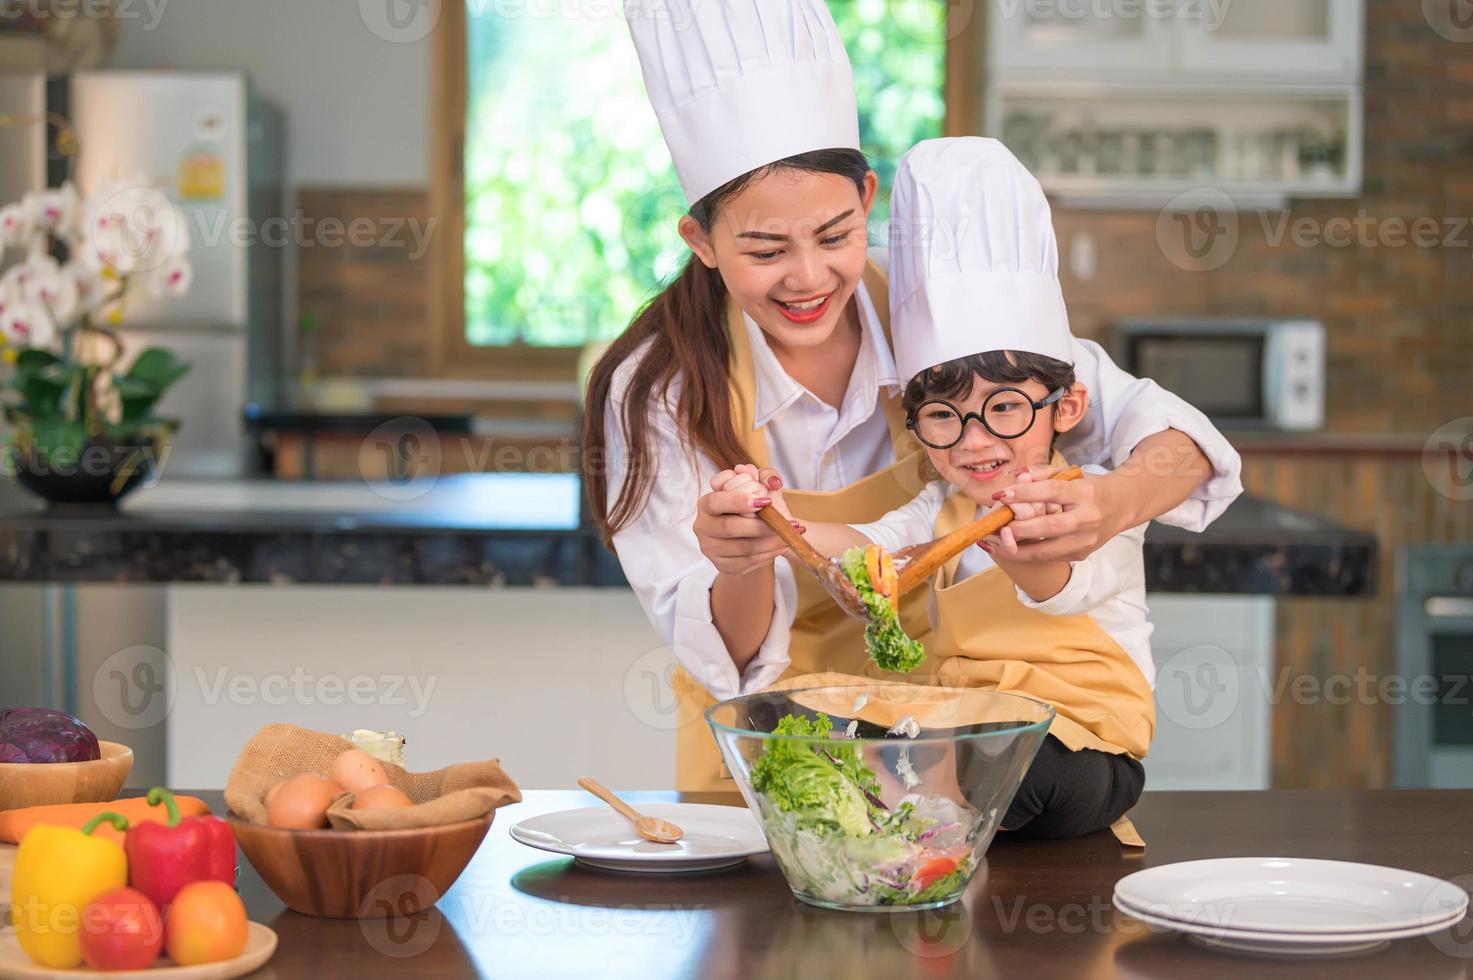 feliz linda mulher asiática e menino bonitinho com óculos, prepare-se para cozinhar na cozinha em casa. pessoas estilos de vida e família. conceito de comida e ingredientes caseiros. vida de duas pessoas tailandesas foto